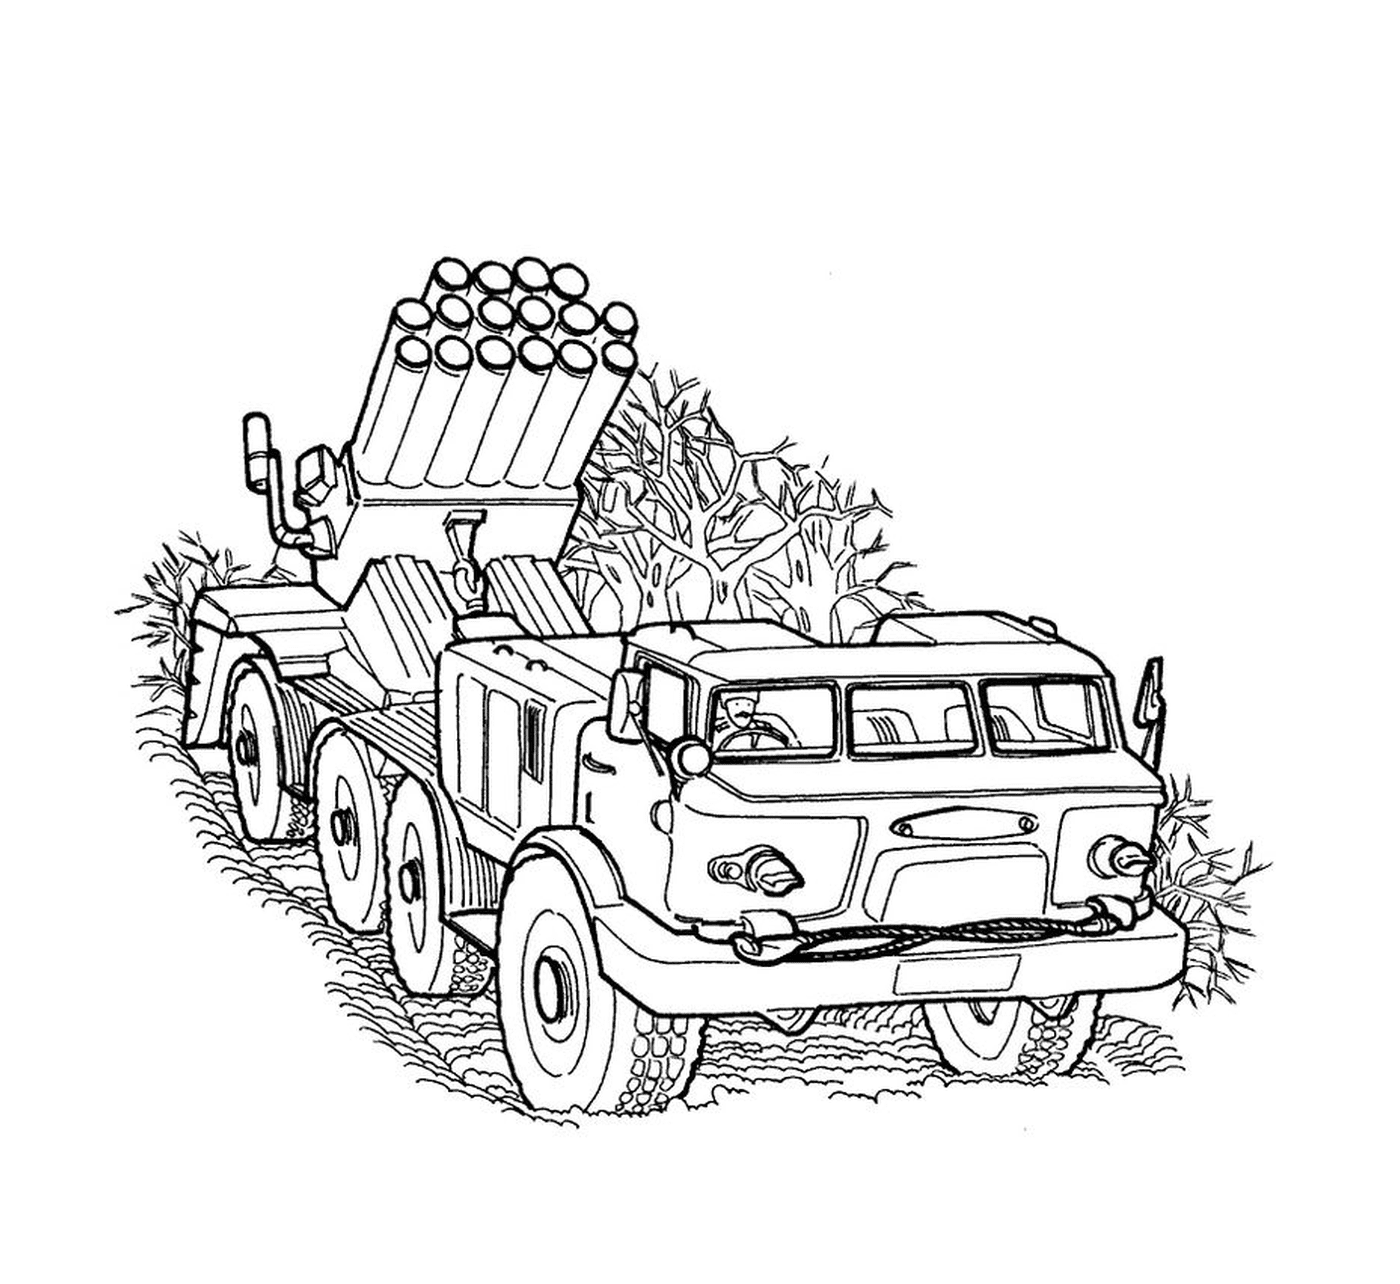  Veicolo militare: un vecchio camion con un lanciarazzi 